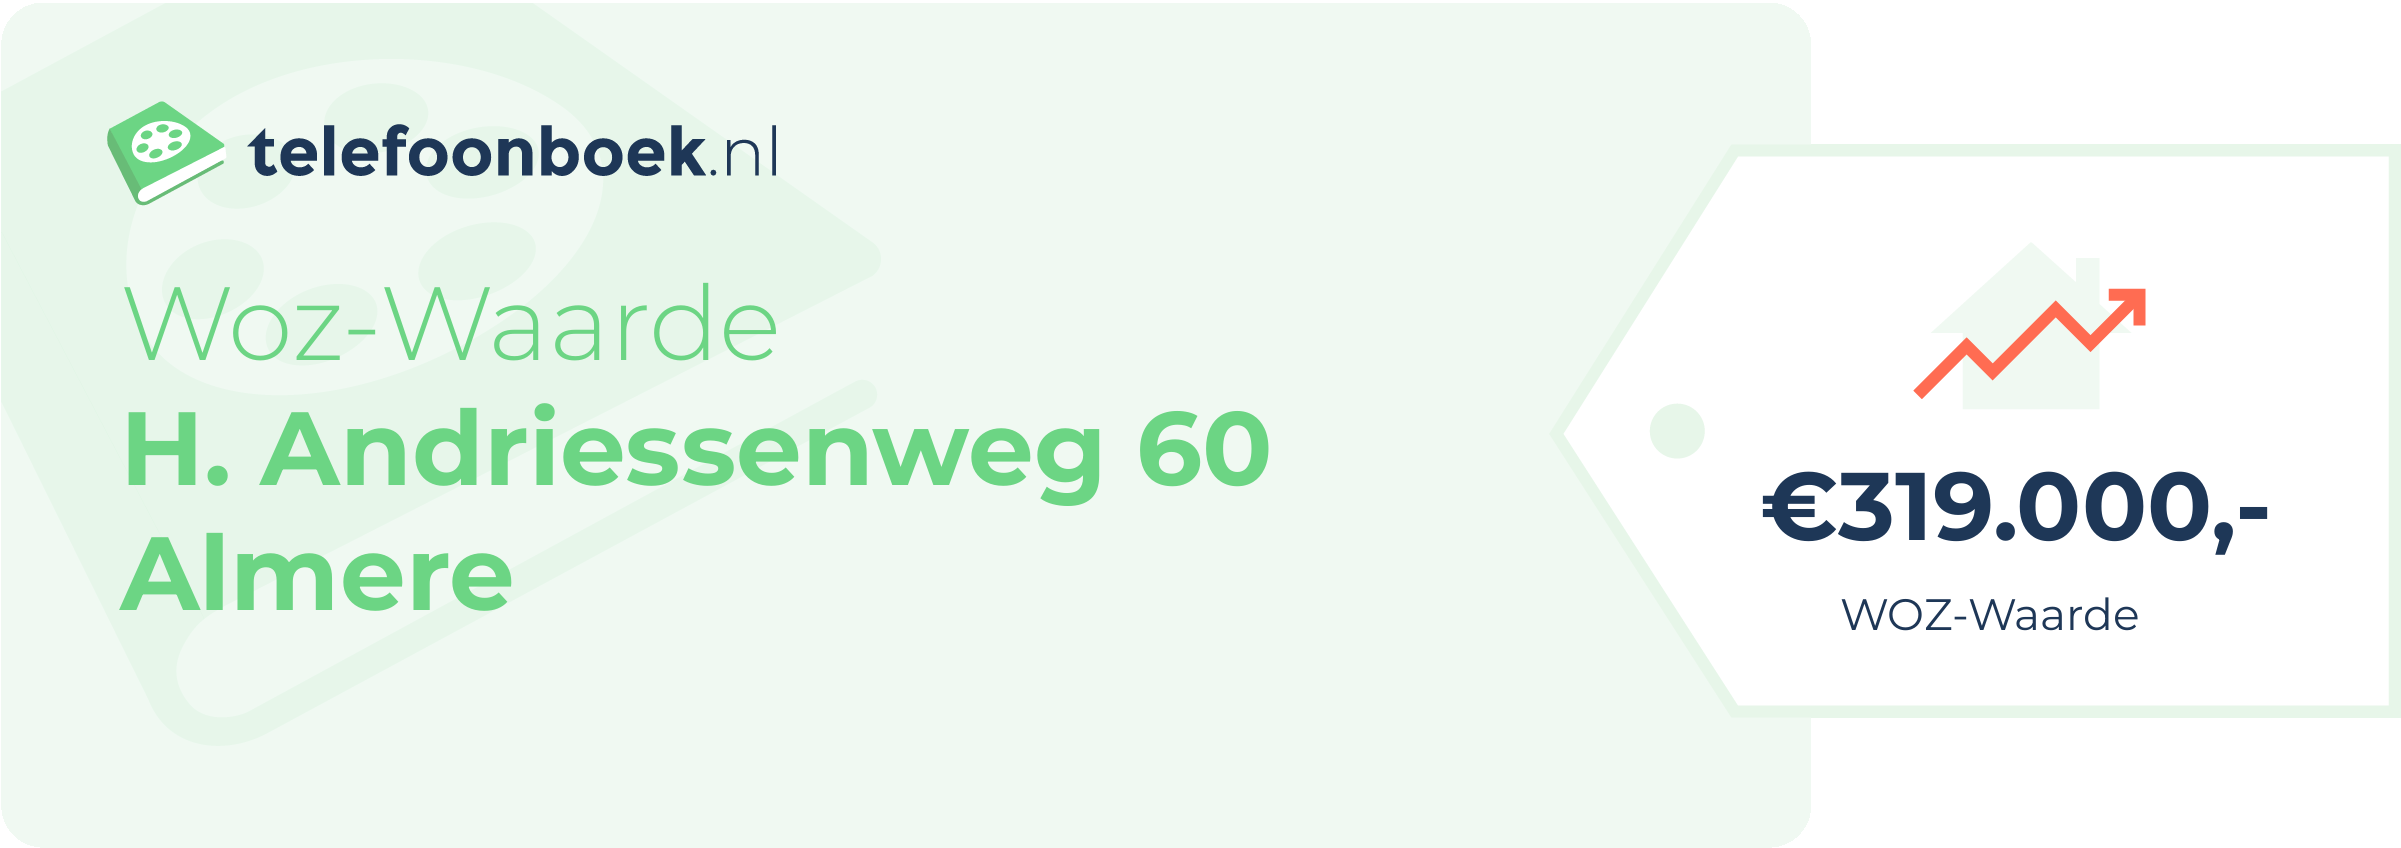 WOZ-waarde H. Andriessenweg 60 Almere